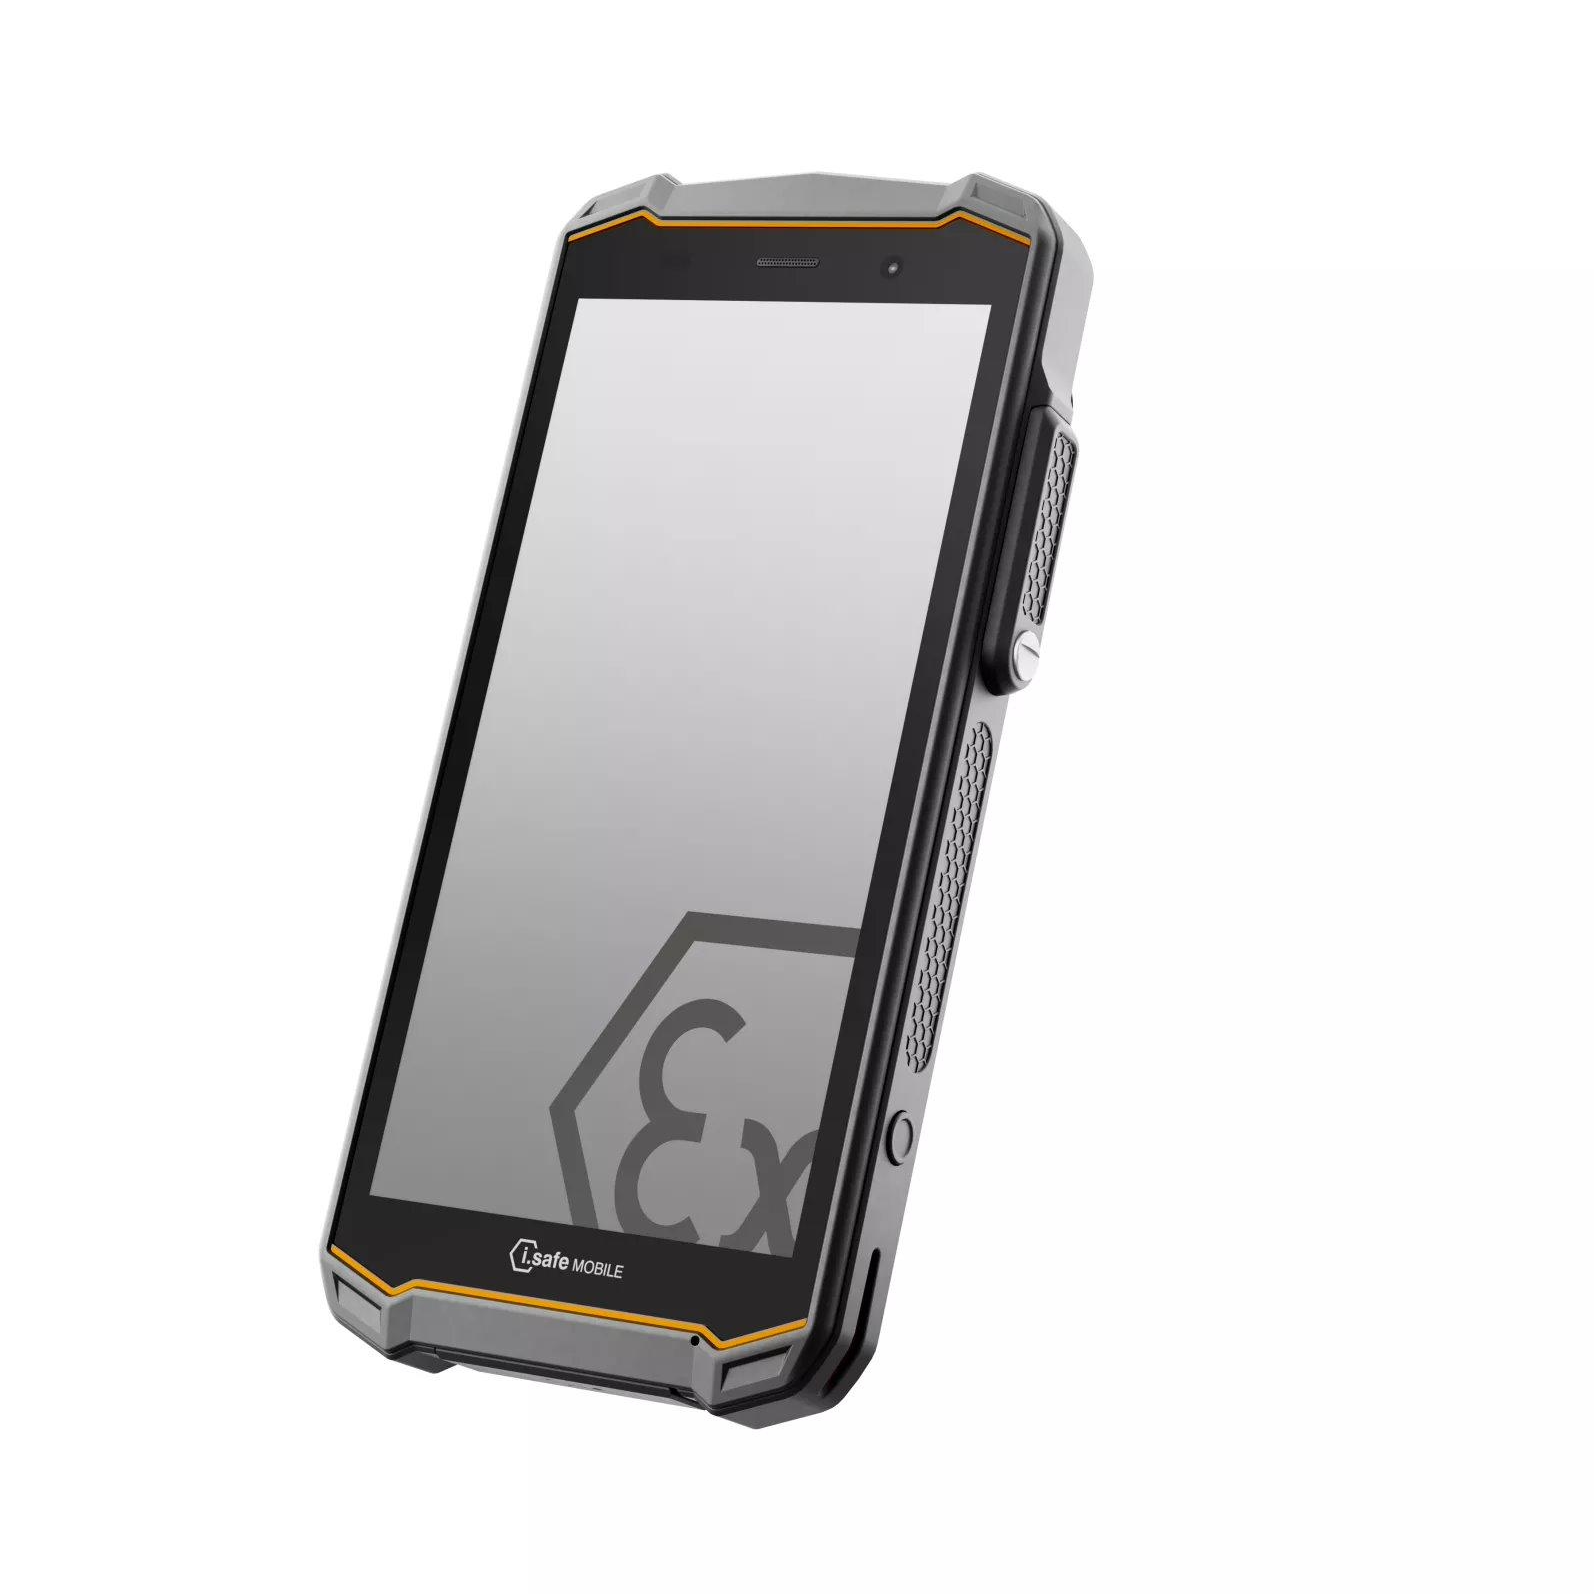 诺基亚联合德国i.safe推出IS540.2工业手机：搭载高通QCM6490芯片和4400mAh电池